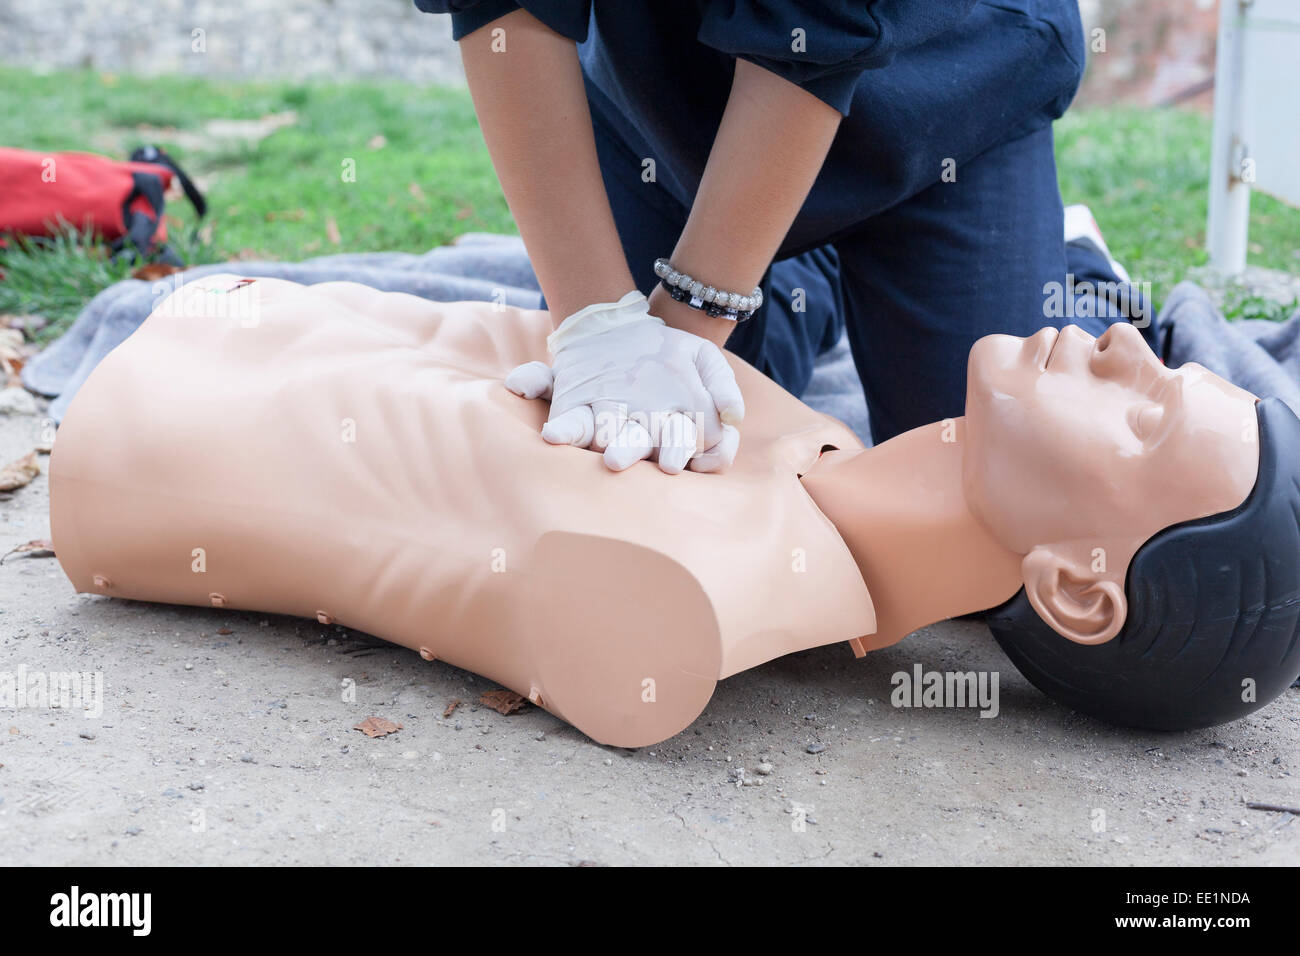 Pratiquer la réanimation cardiorespiratoire paramédic - RCP sur un mannequin Banque D'Images